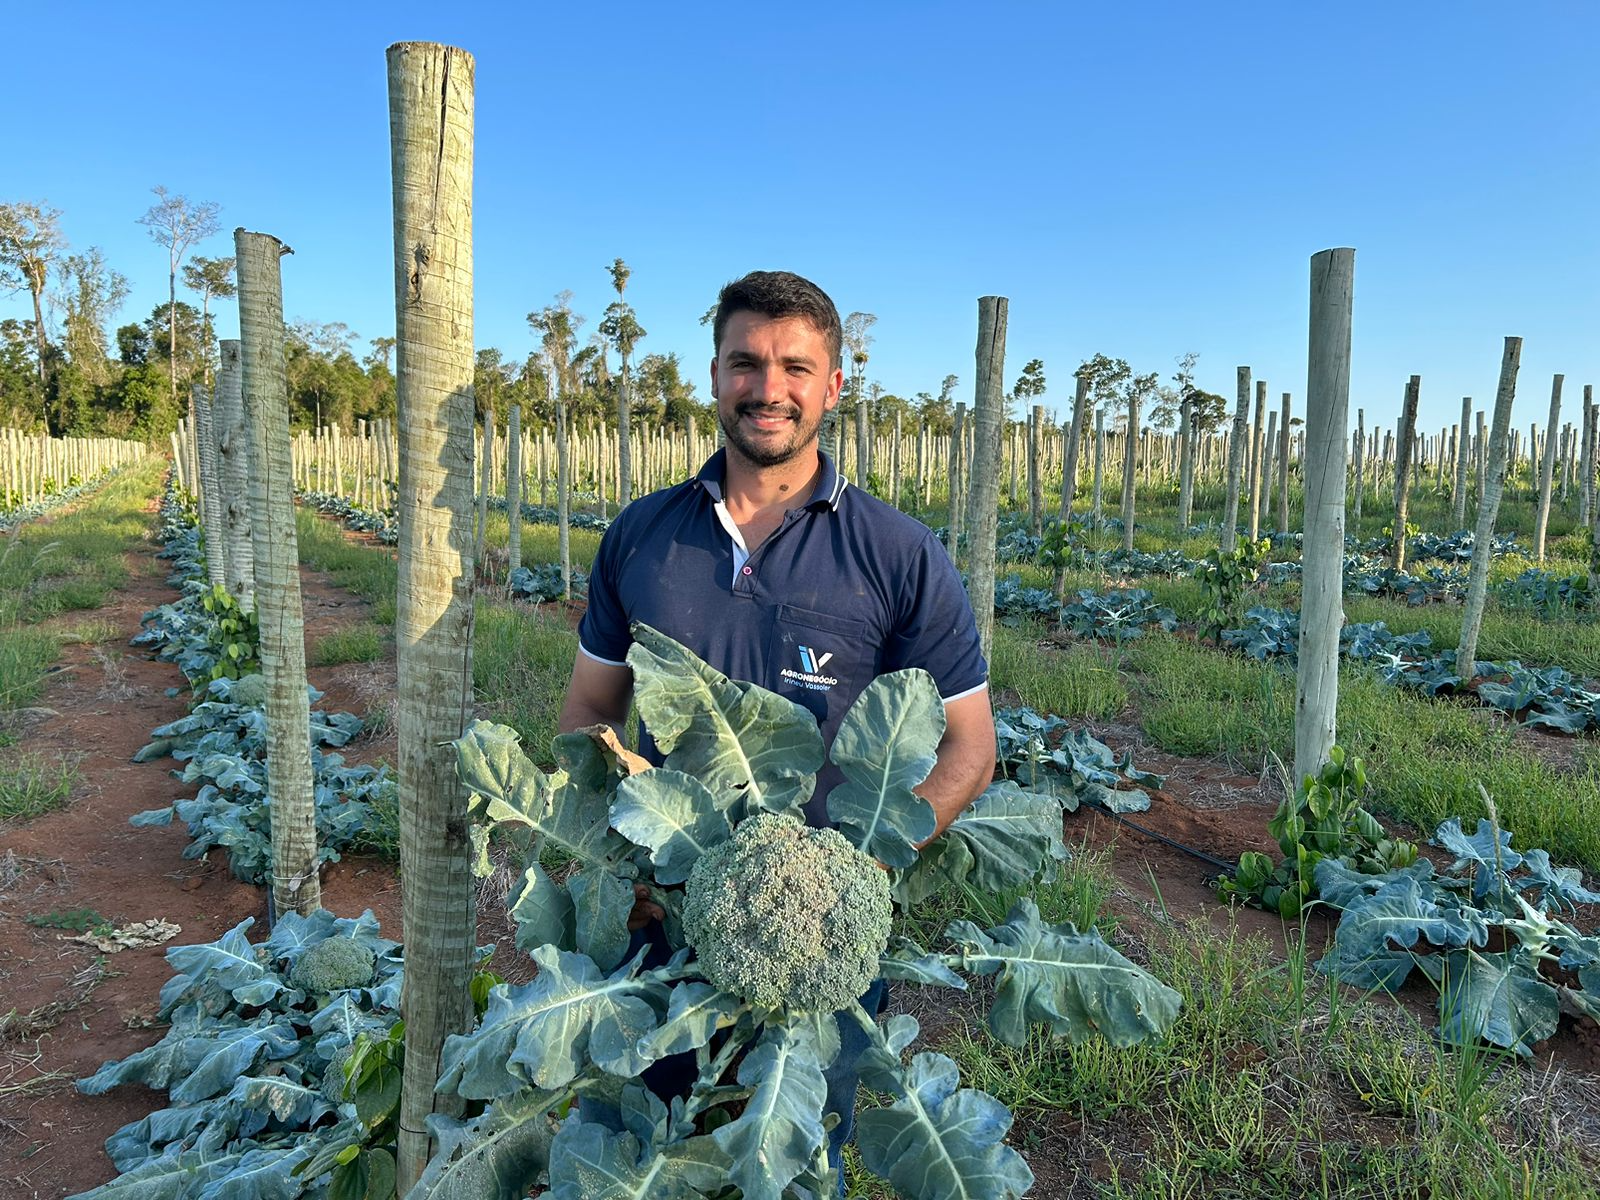 O produtor Carlos Vassoler, de 28 anos, exibe orgulhoso um exemplar de brócolis com cerca de um quilo colhido na propriedade